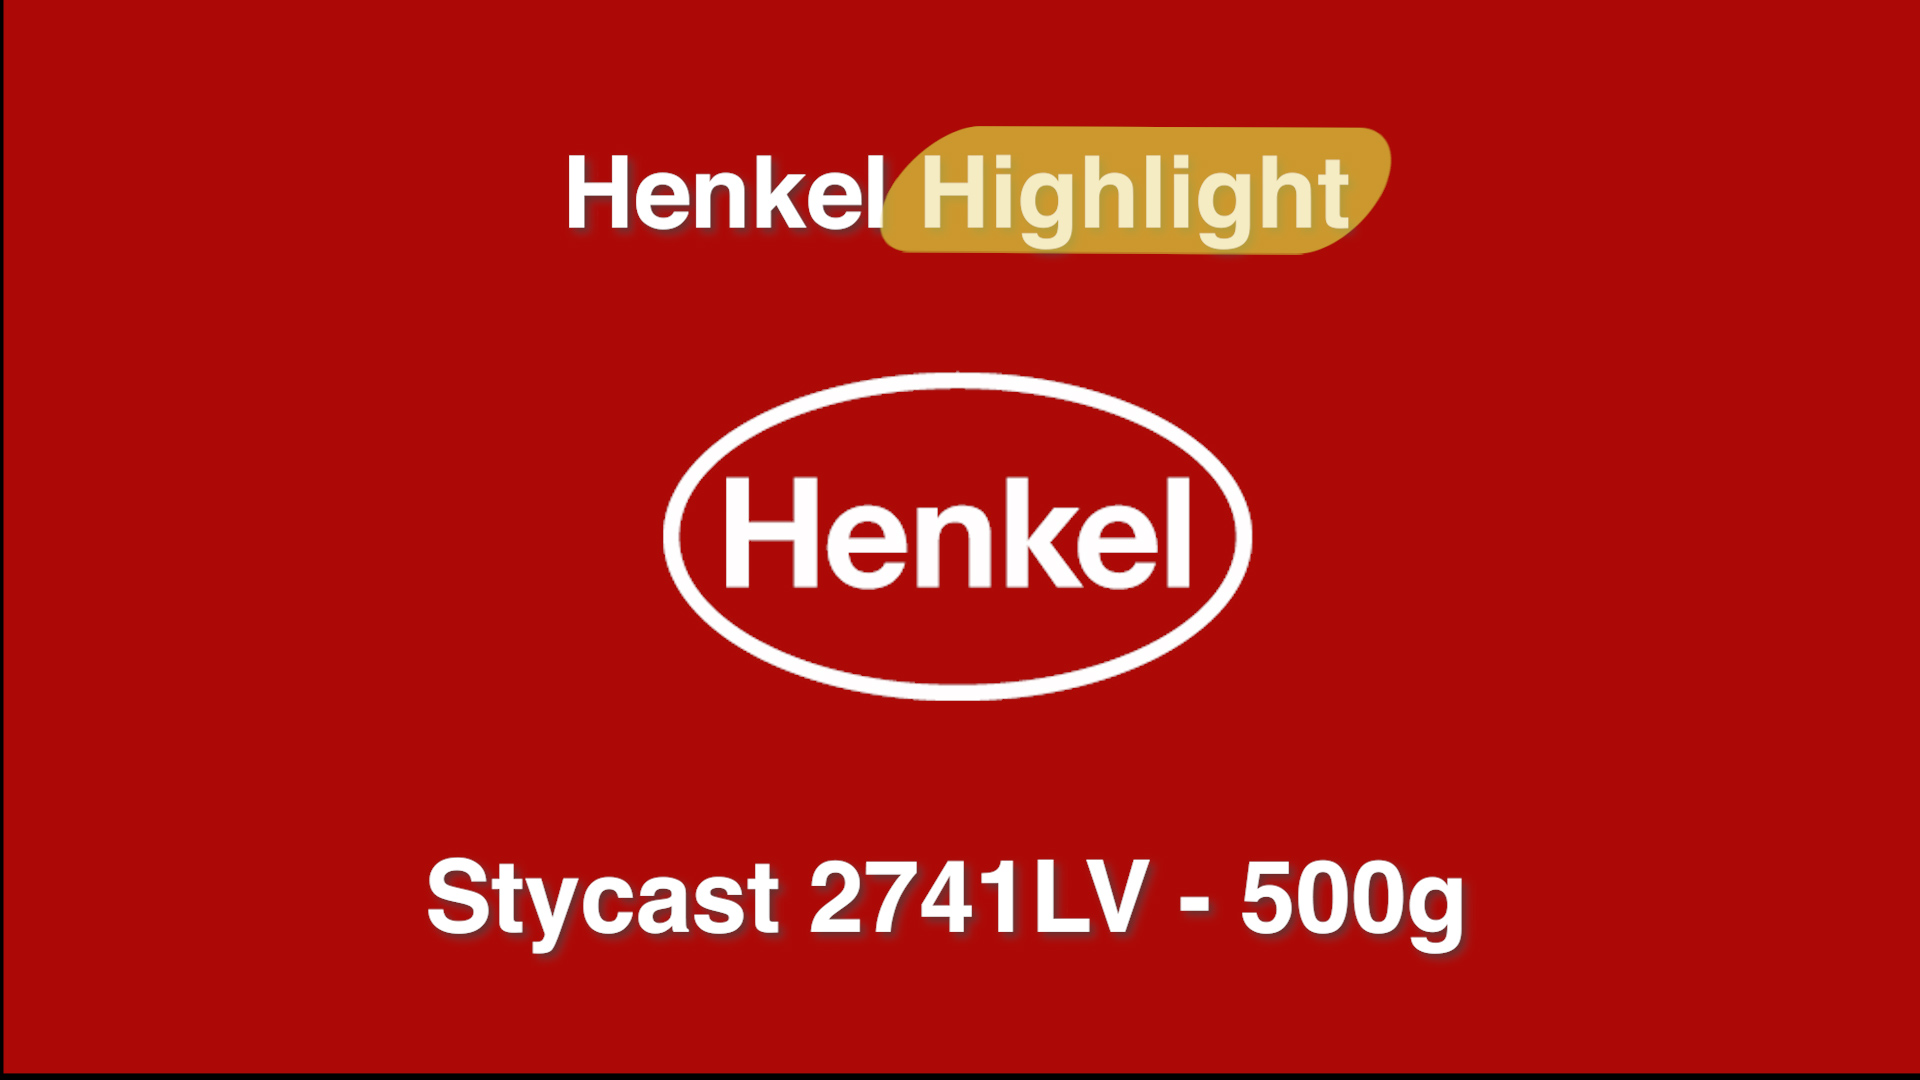 Henkel Highlight